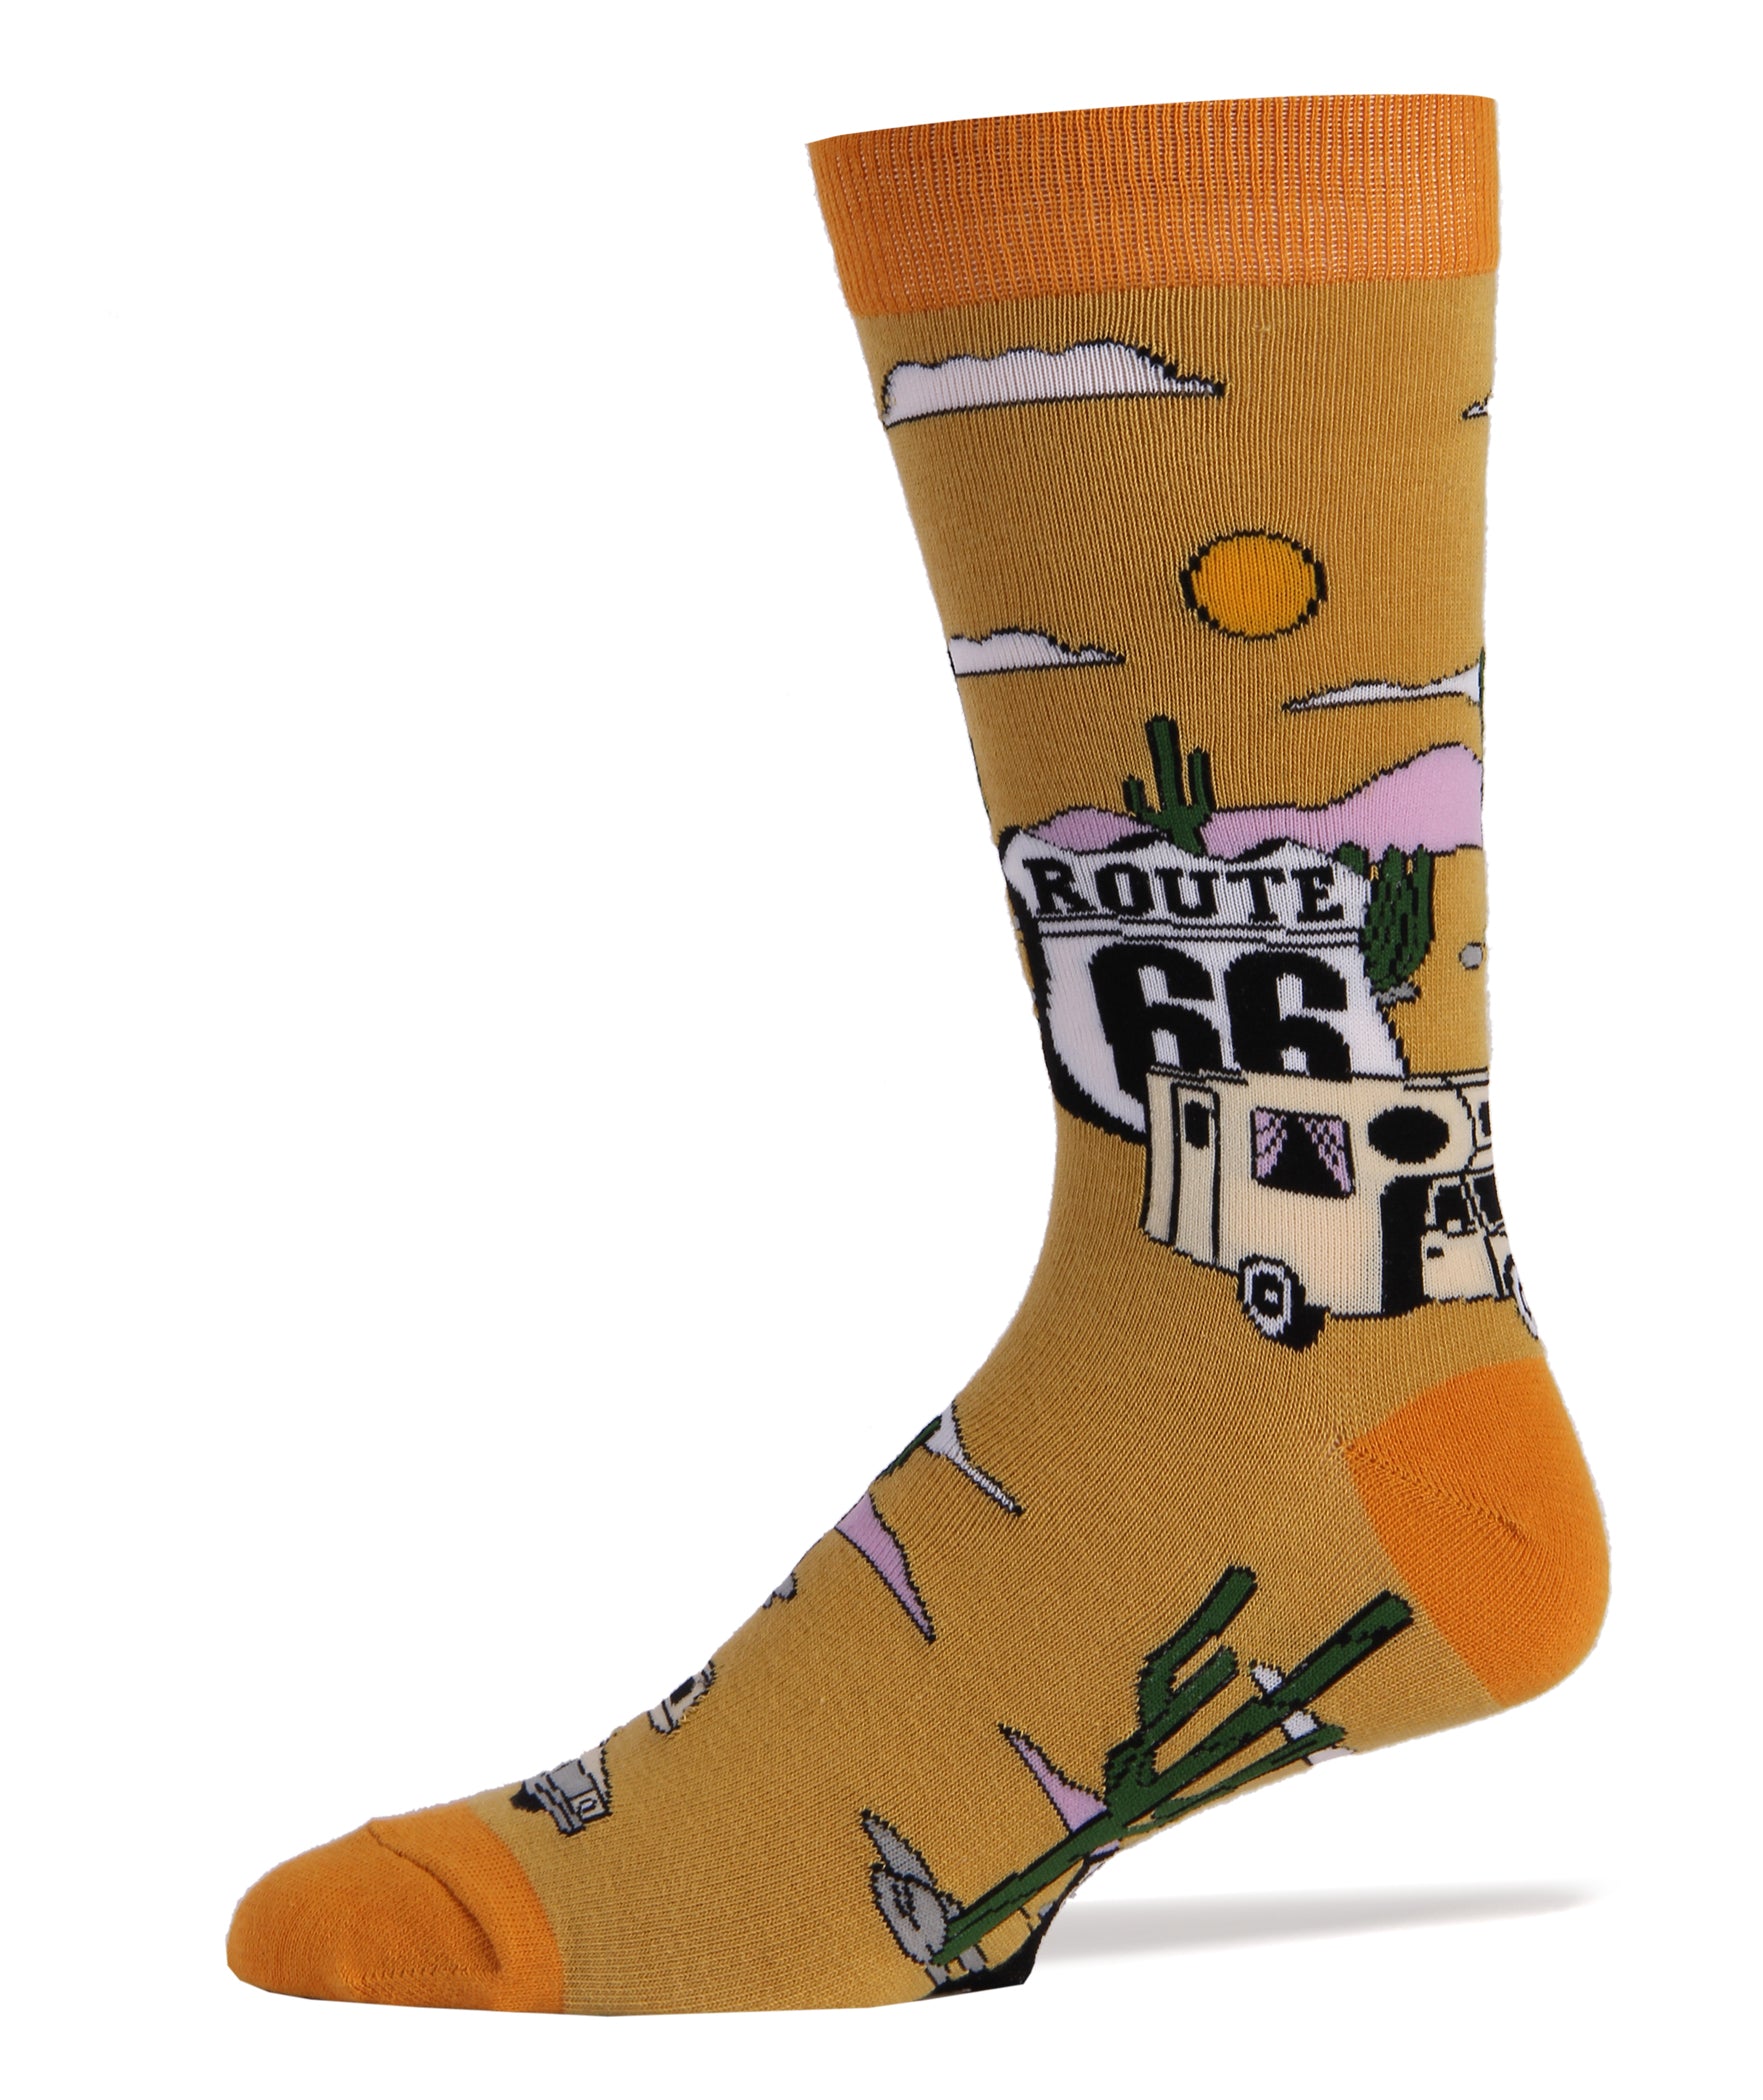 Get Your Kicks Socks | Novelty Crew Socks For Men